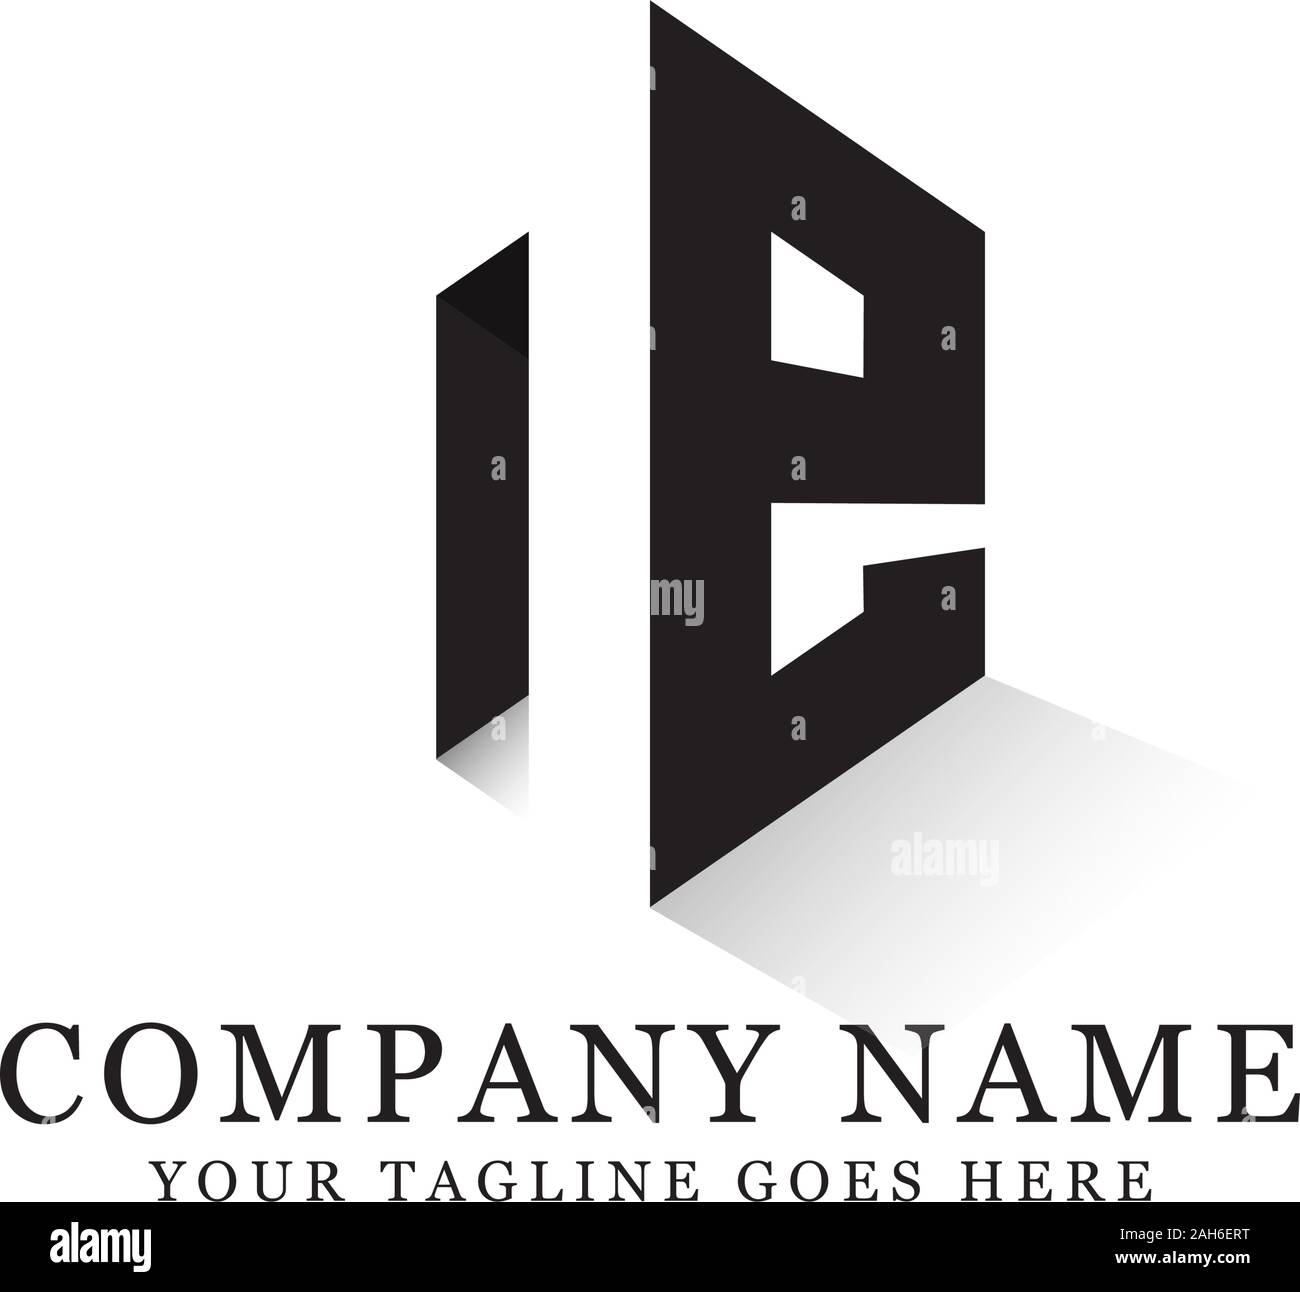 NE initial logo designs, hexagonal logo template, creative logo inspiration Stock Vector